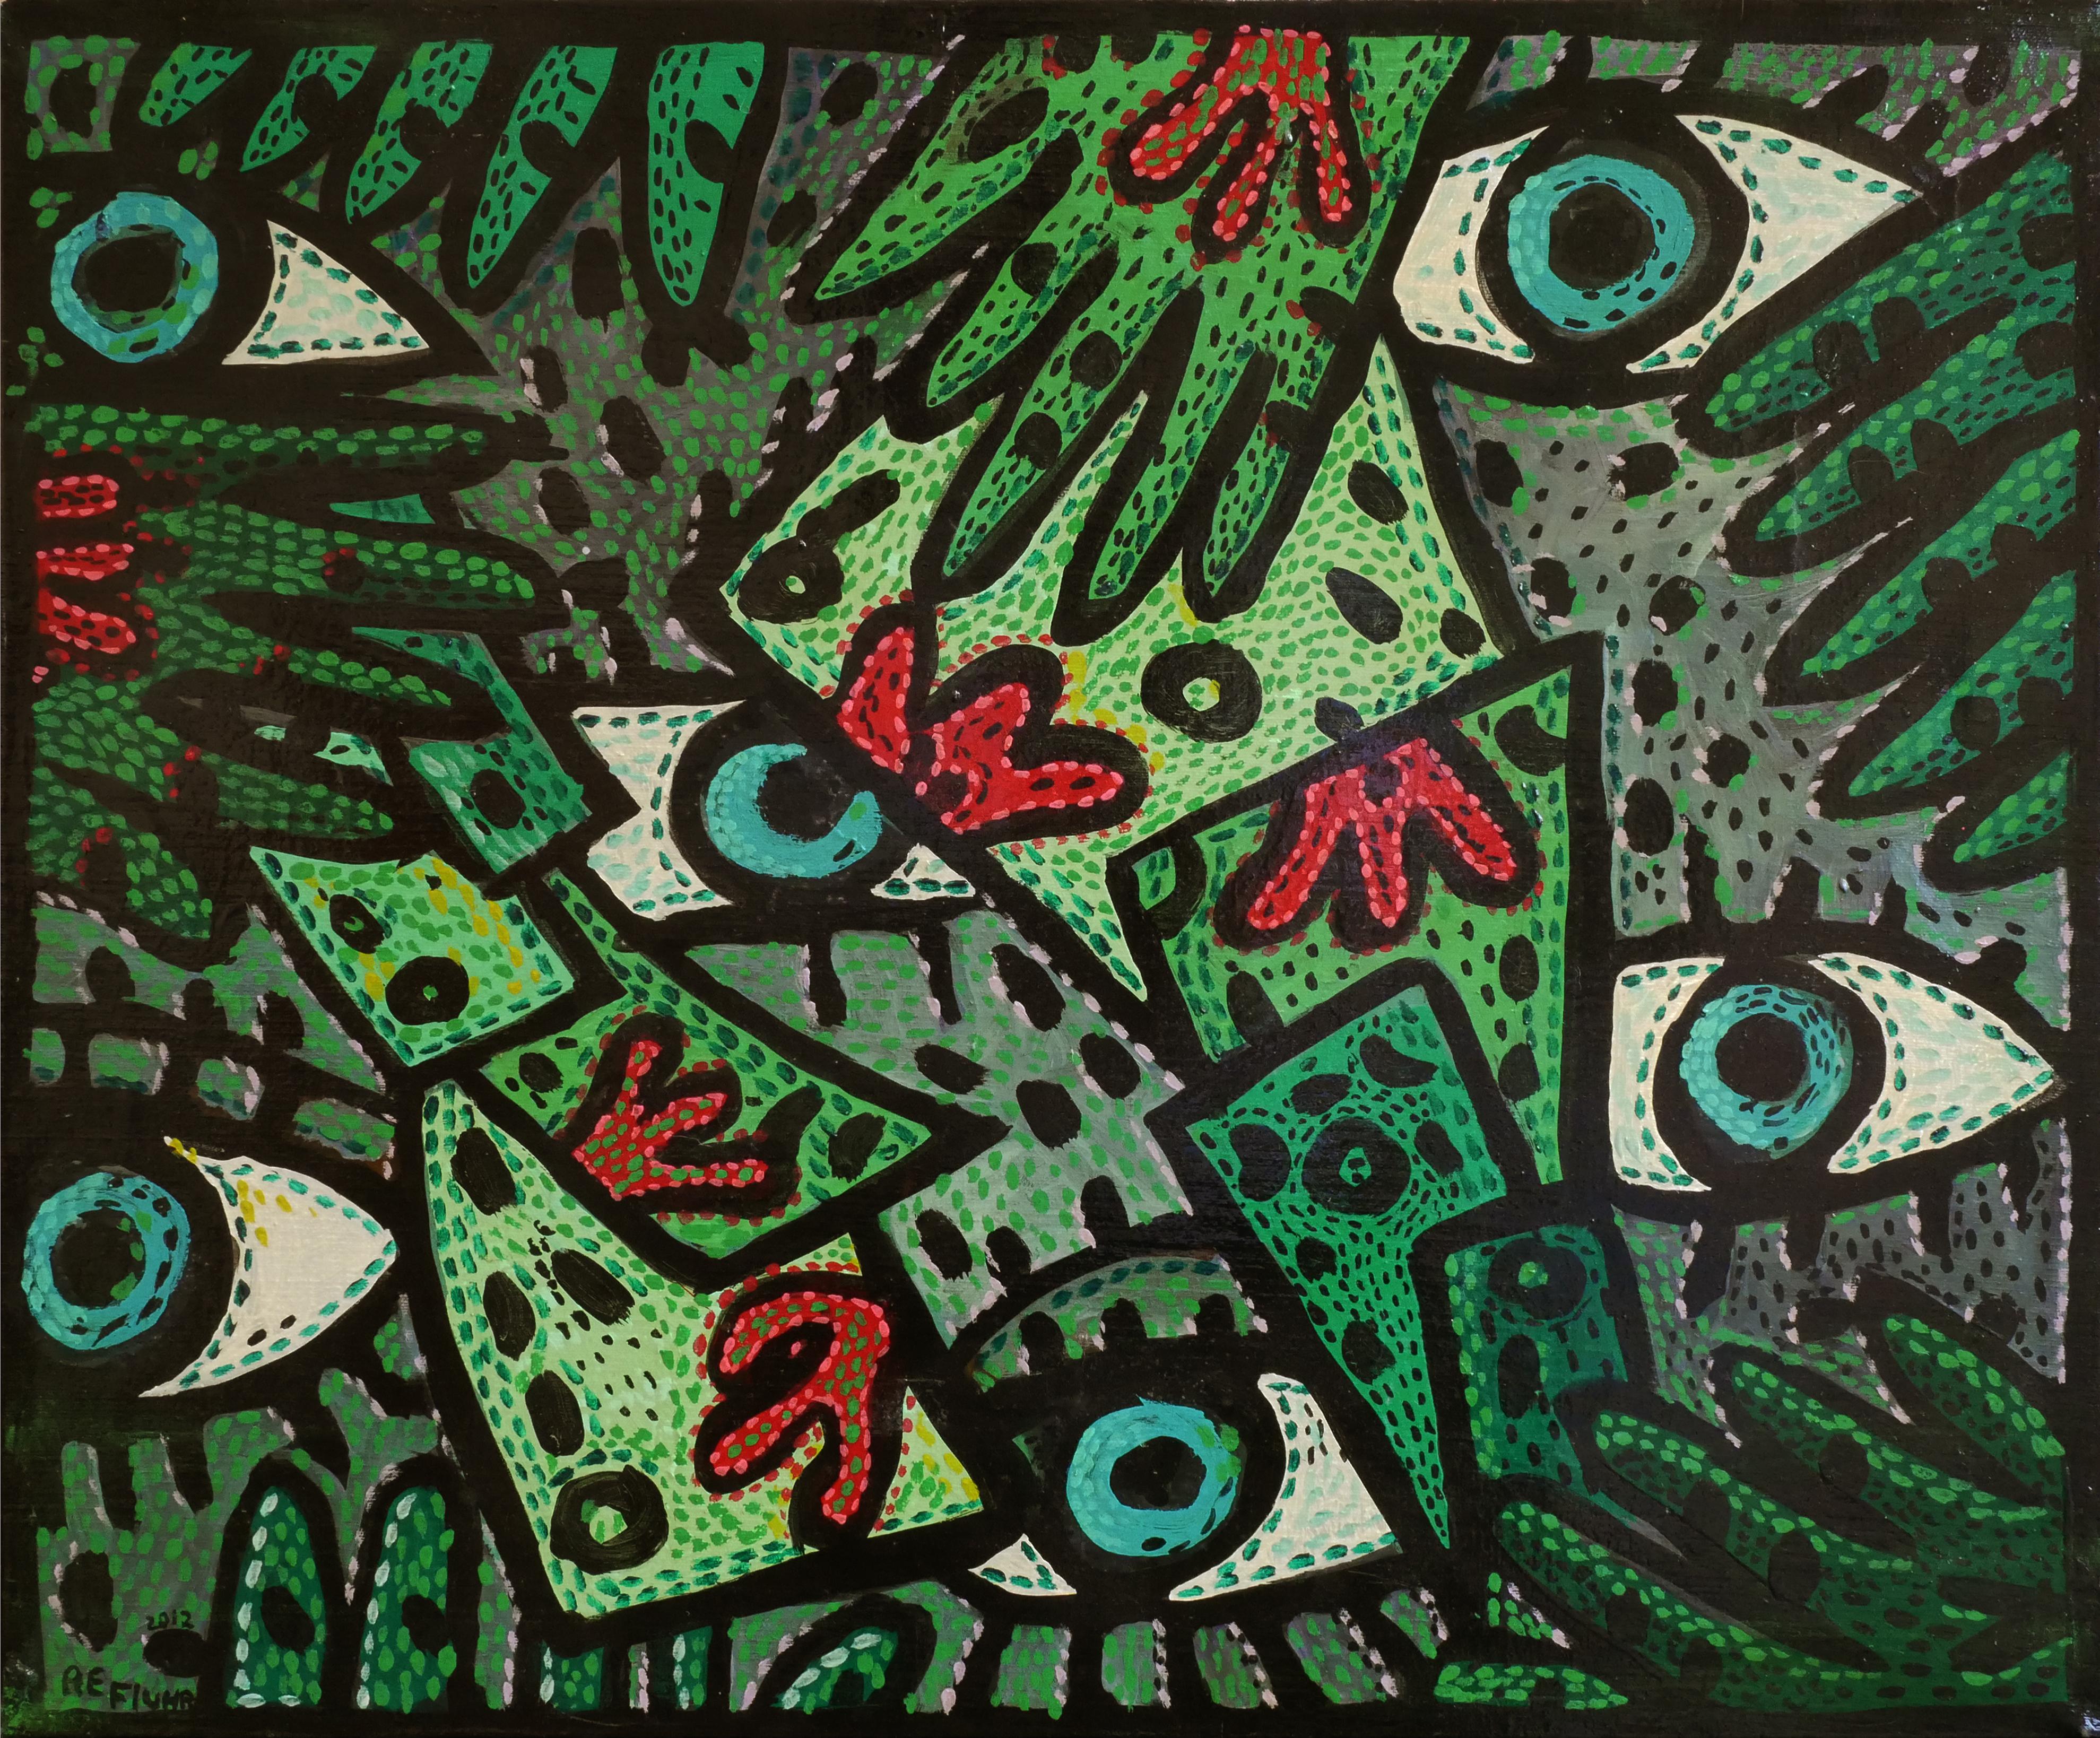 Abstract Painting Richard Fluhr - "De l'argent gratuit ?" Petits yeux amusants verts et rouges Peinture abstraite contemporaine